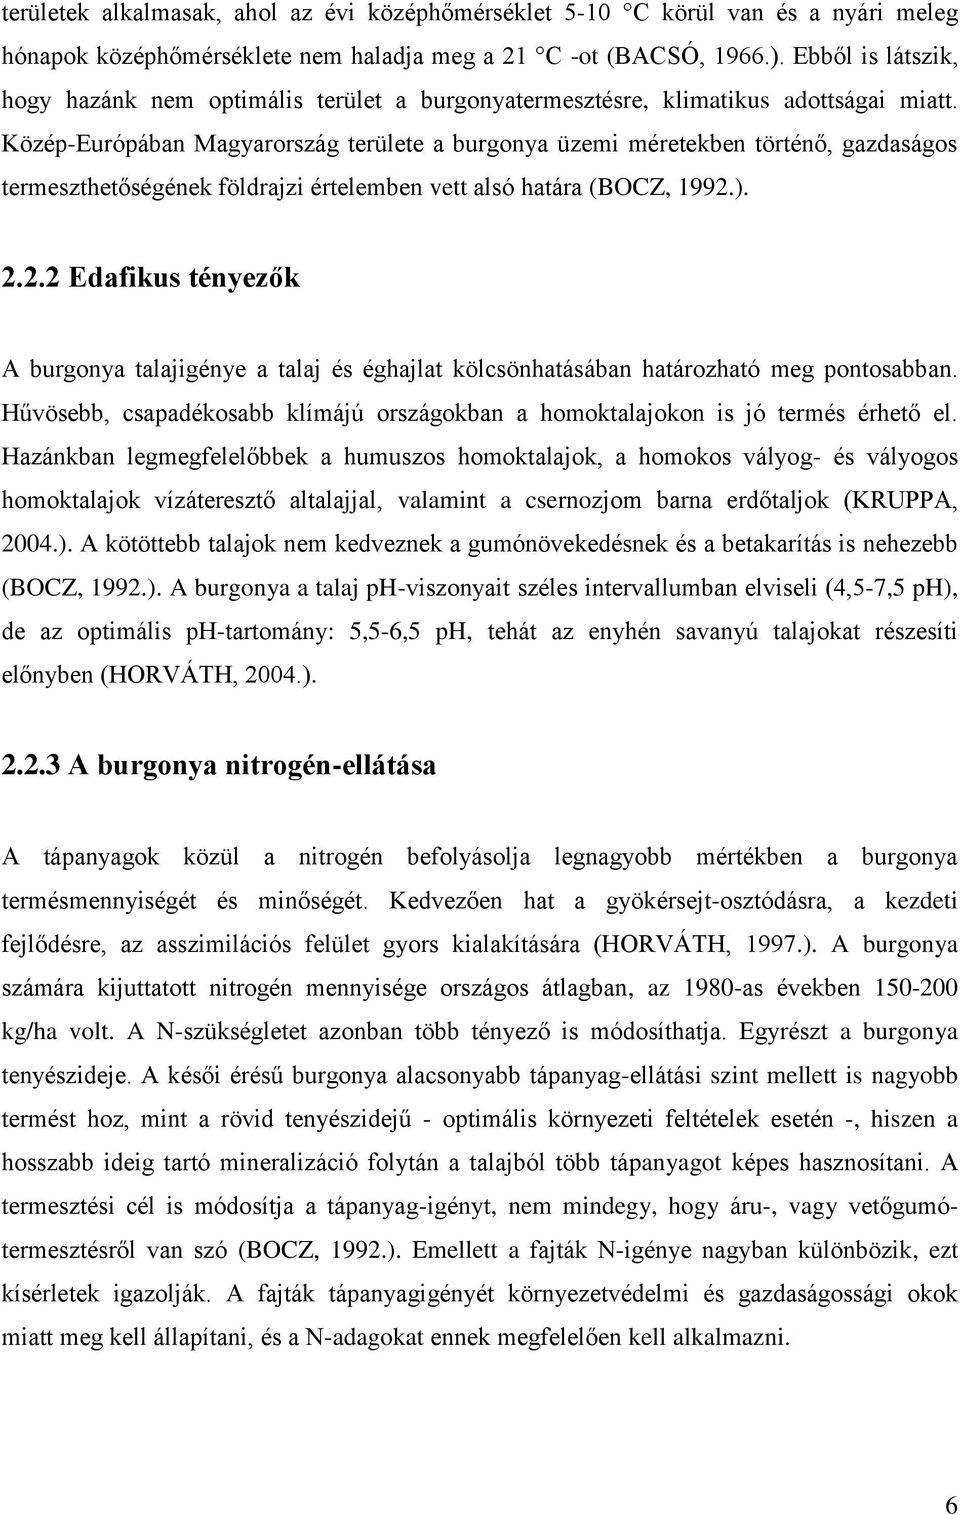 Közép-Európában Magyarország területe a burgonya üzemi méretekben történő, gazdaságos termeszthetőségének földrajzi értelemben vett alsó határa (BOCZ, 1992.